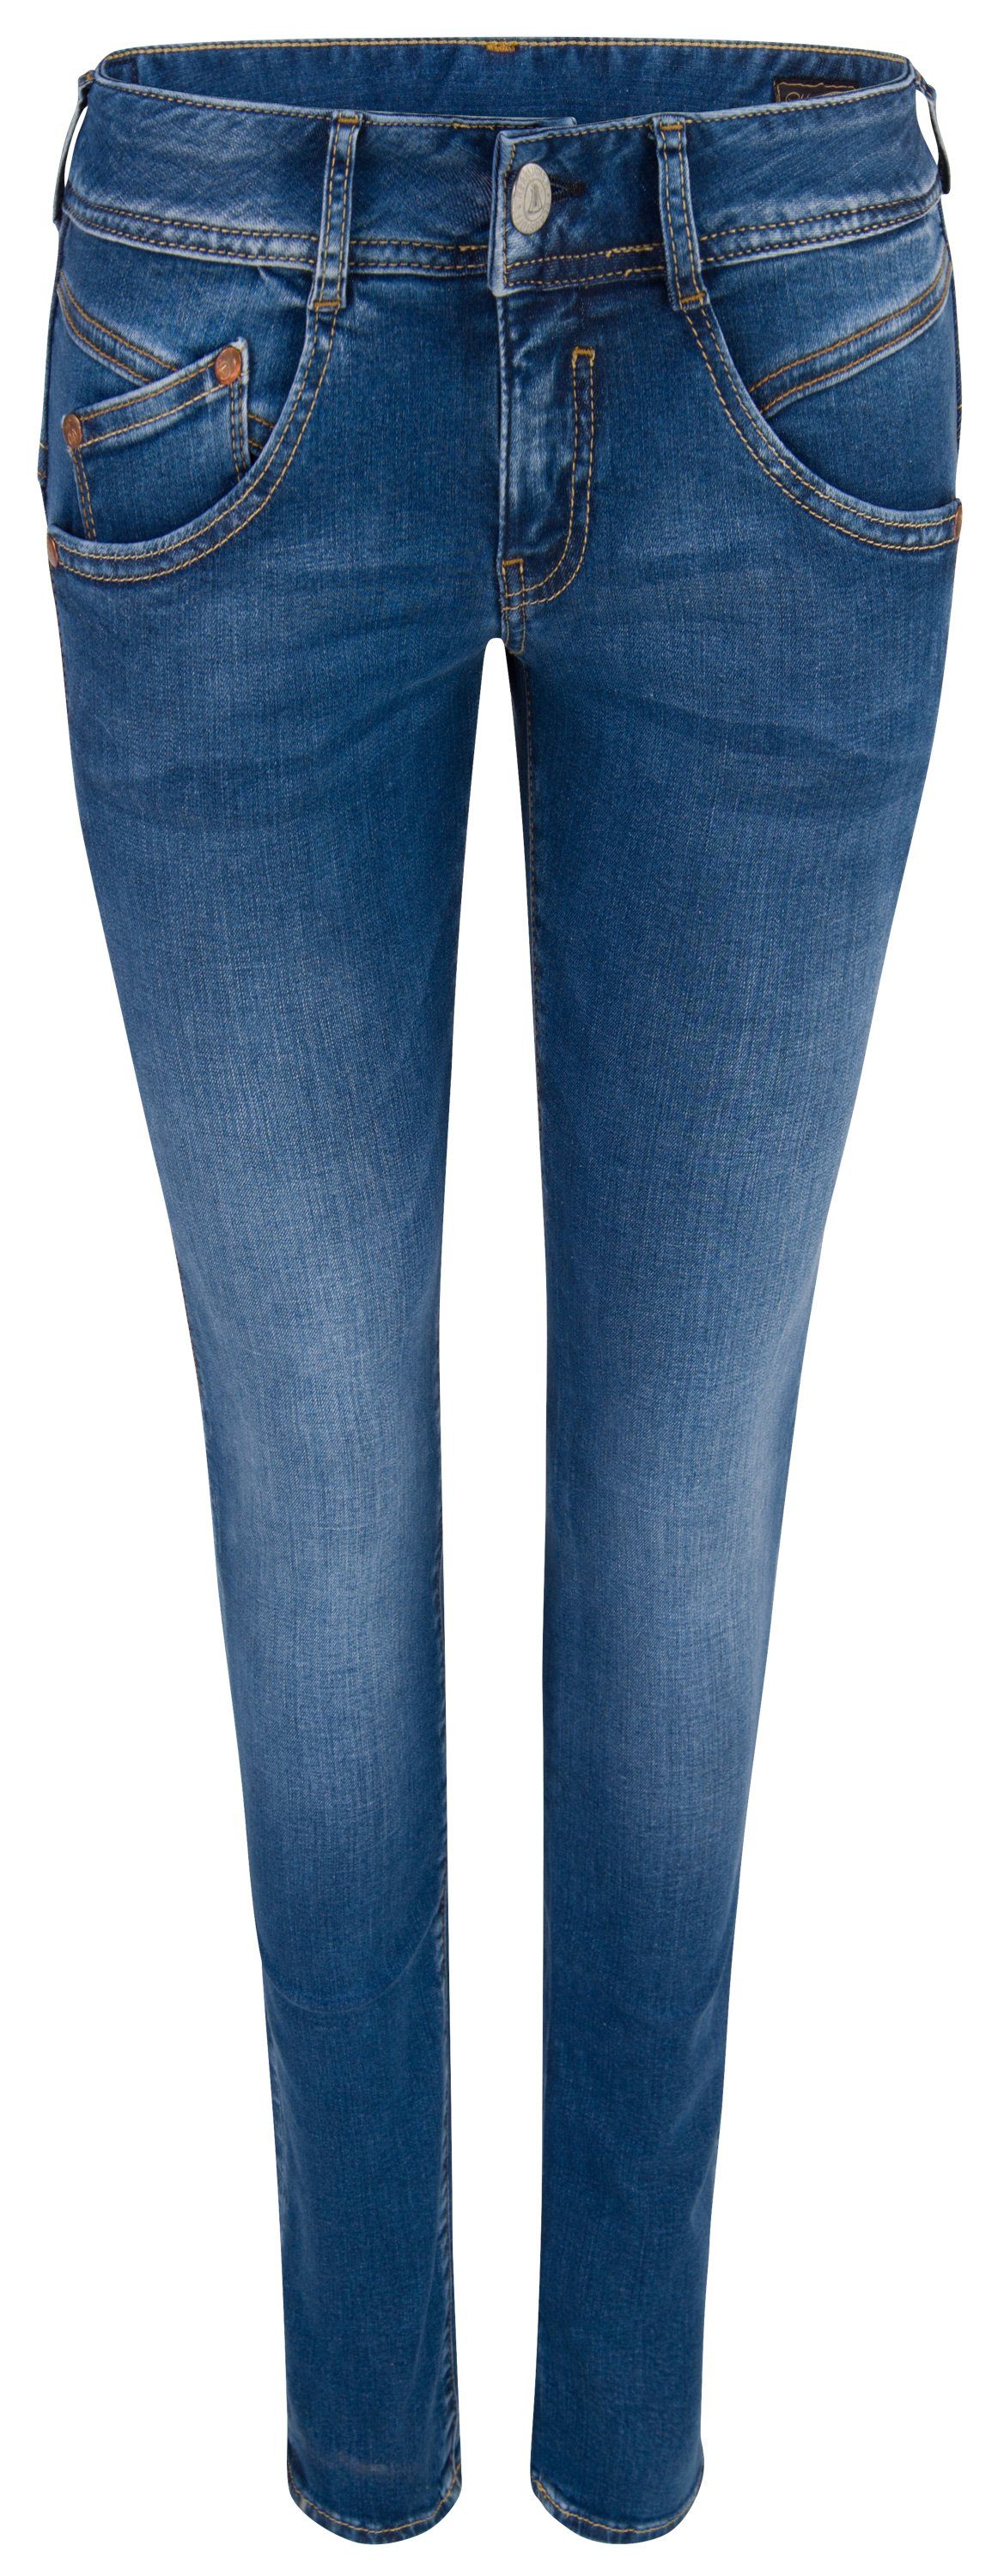 HERRLICHER Stretch-Jeans Powerstretch dazzling Denim Herrlicher Slim blue GILA 5606-D9668-663